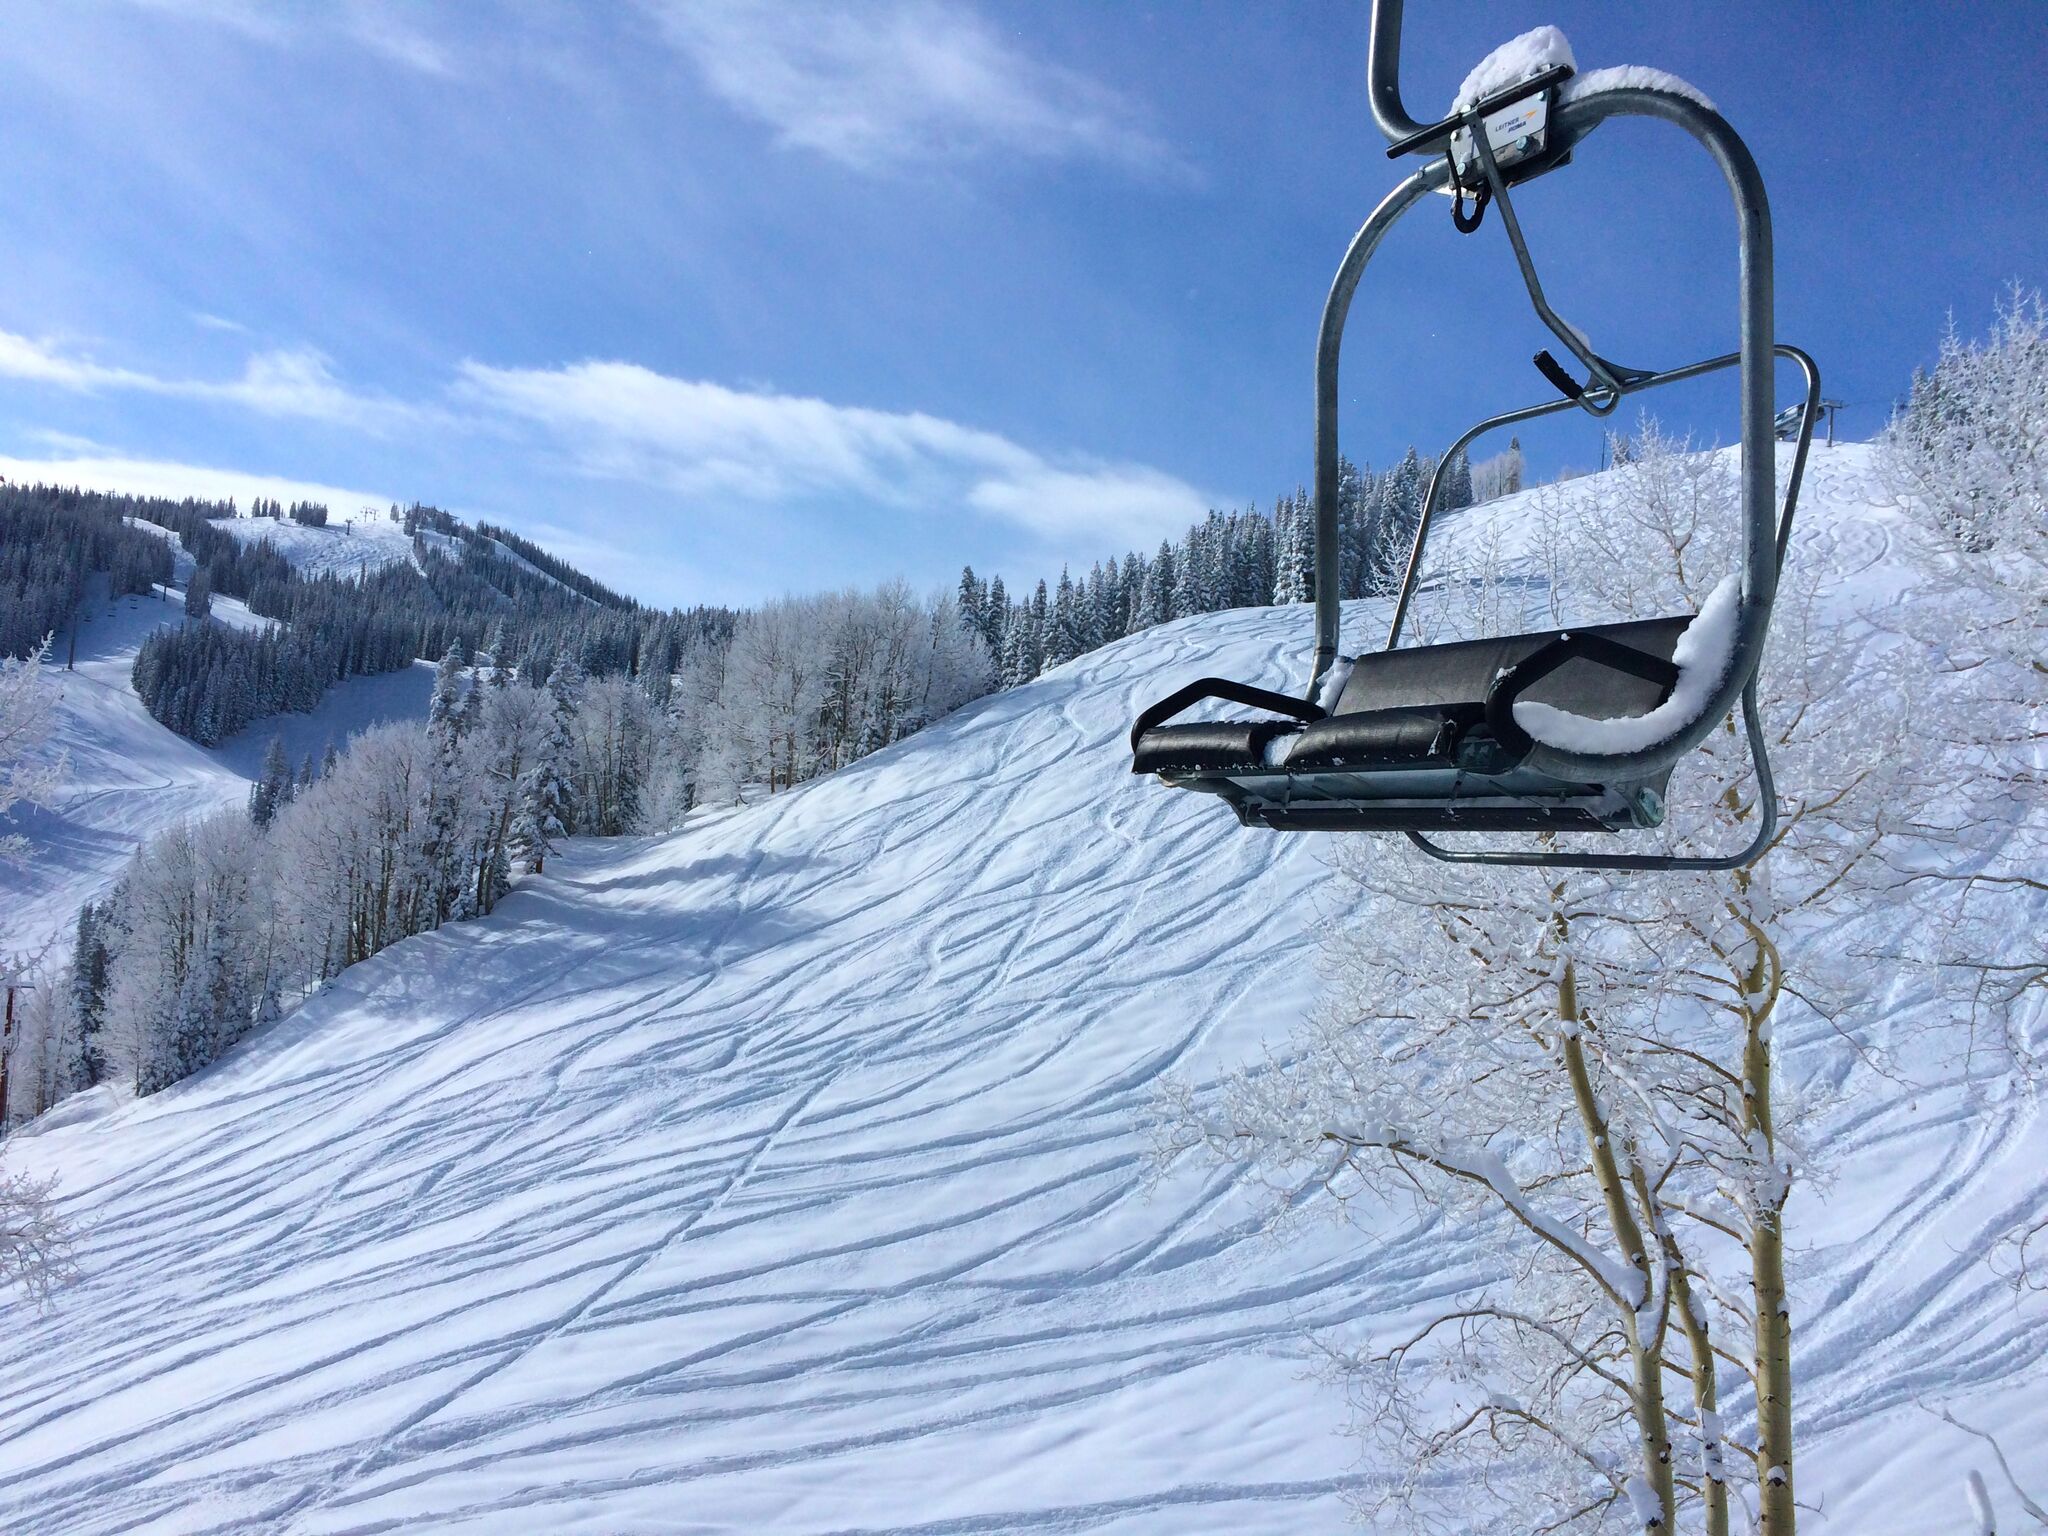 spring.snow.chairlift.Aspen.jpeg